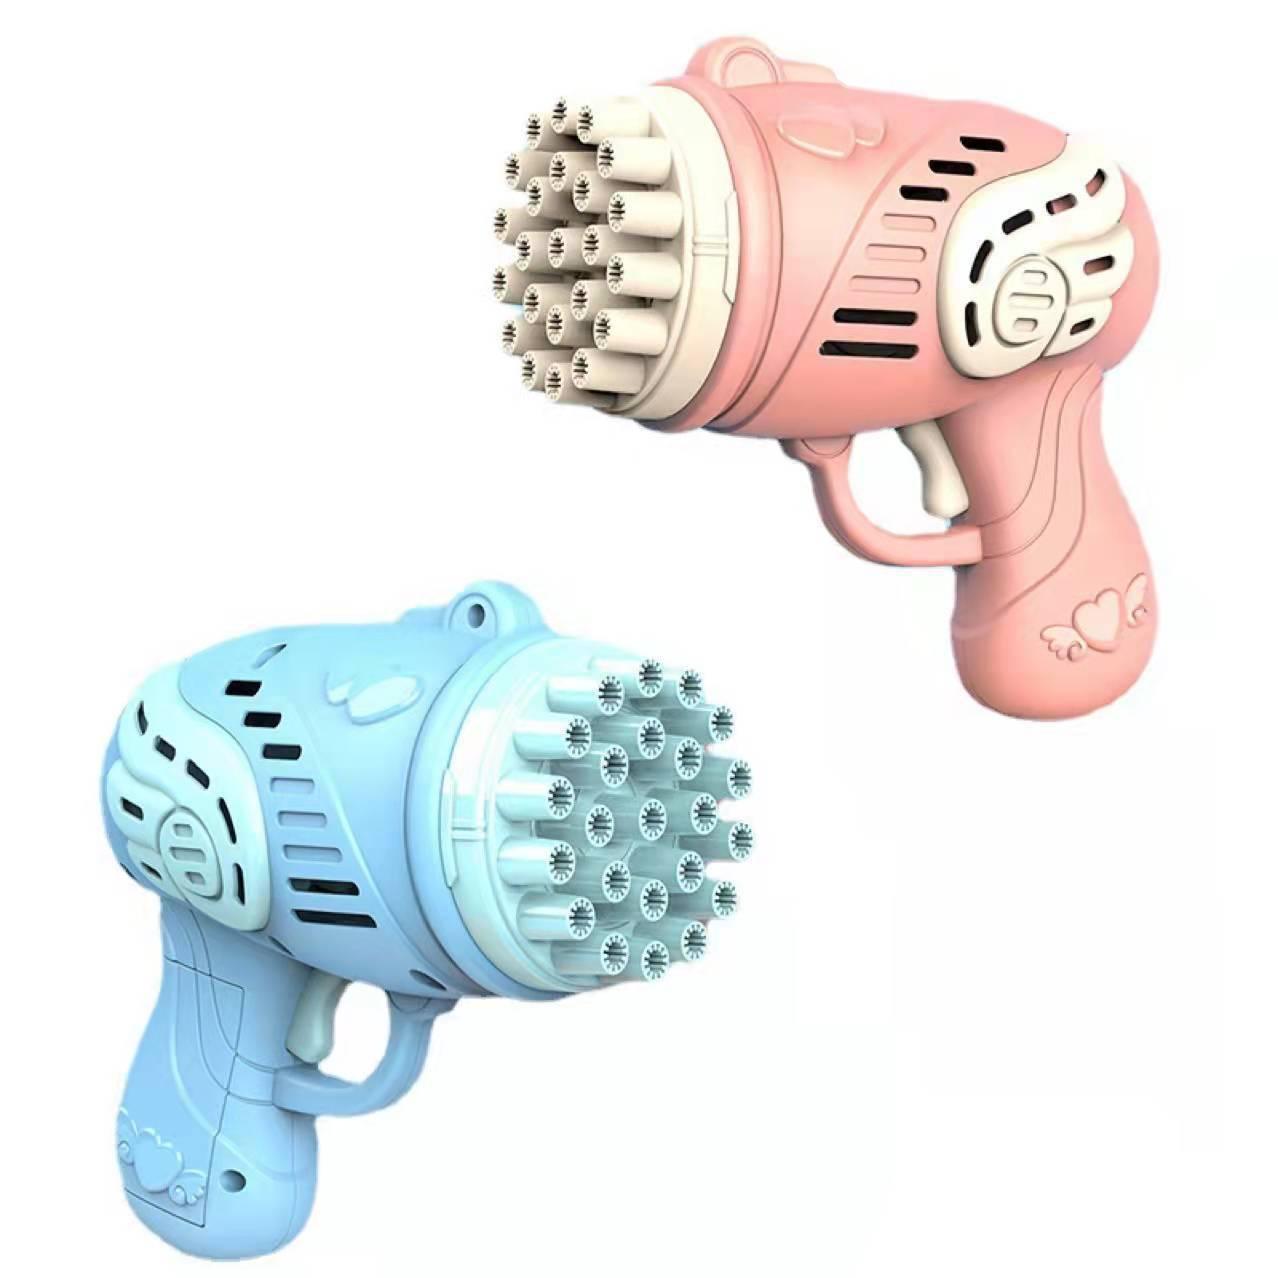 Balerz 23 Holes Automatic Gatling Bubble Gun Soap Maker Kids Outdoor Electric Bubble Machine Toys